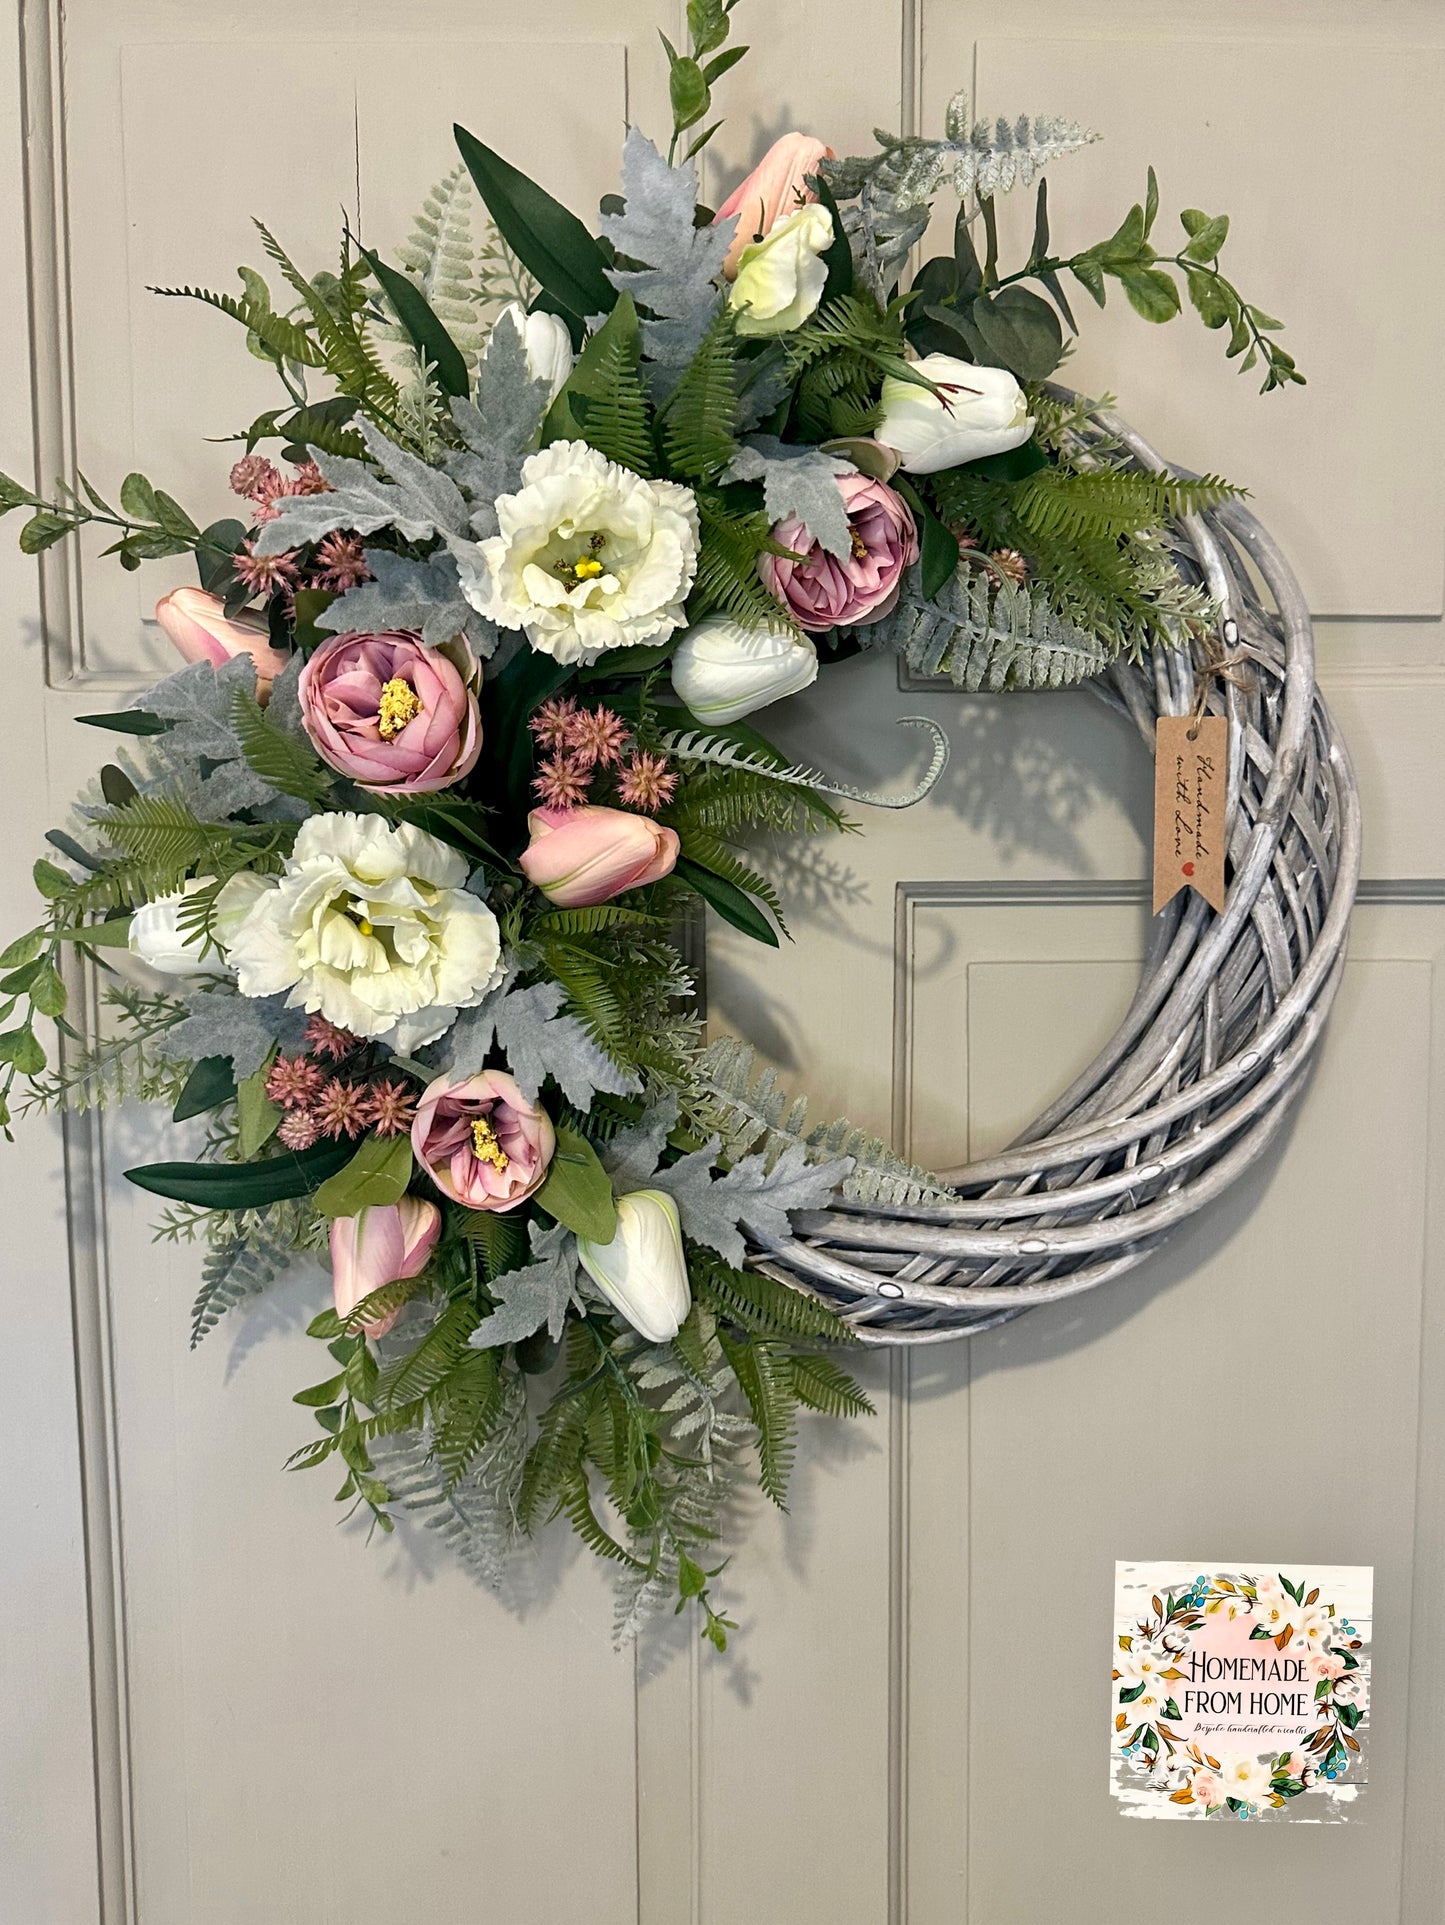 Tintagel rose & lisianthus signature wreath